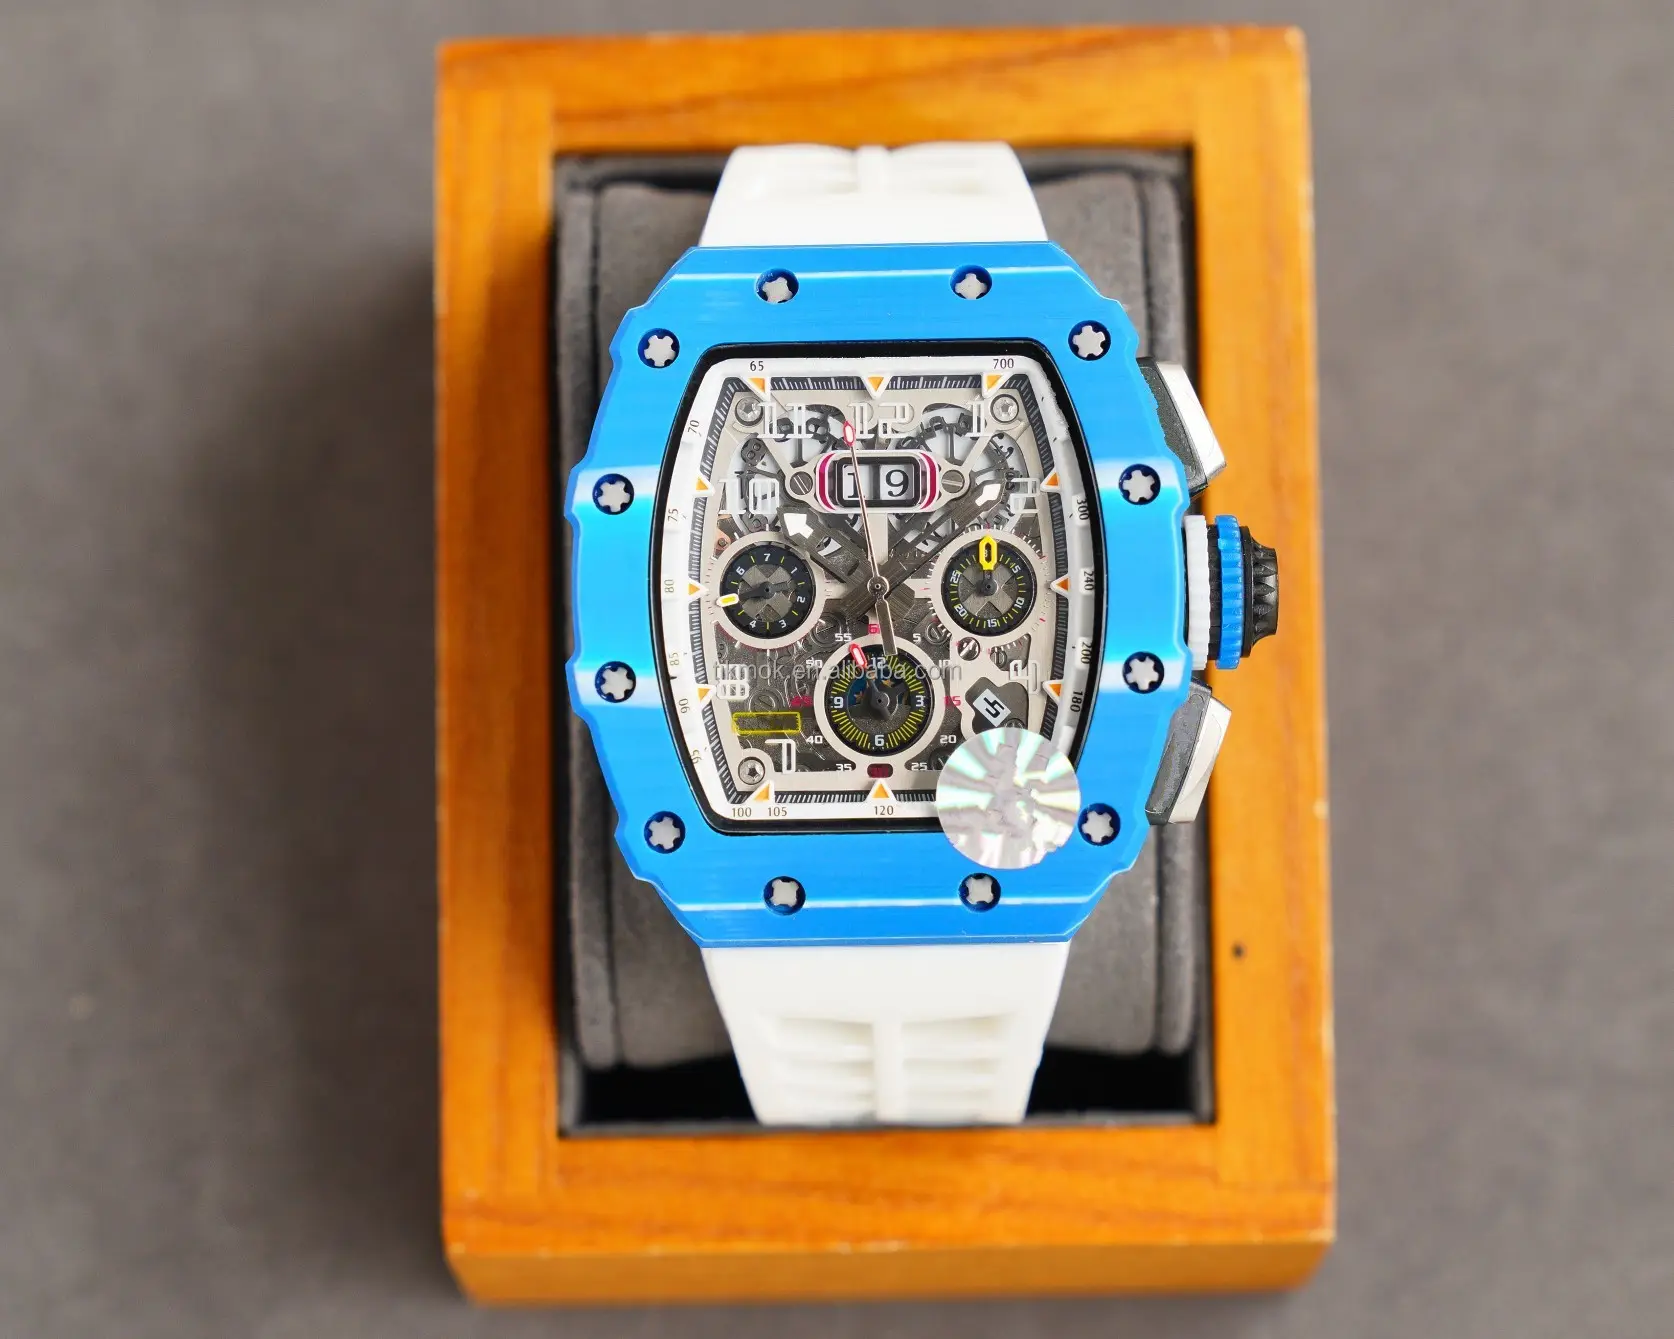 8 cores Carbon Fiber Case Watch 3ATM impermeável automático mergulho relógios mecânicos Mens 49mm Calendar Watch relógios de pulso para homens